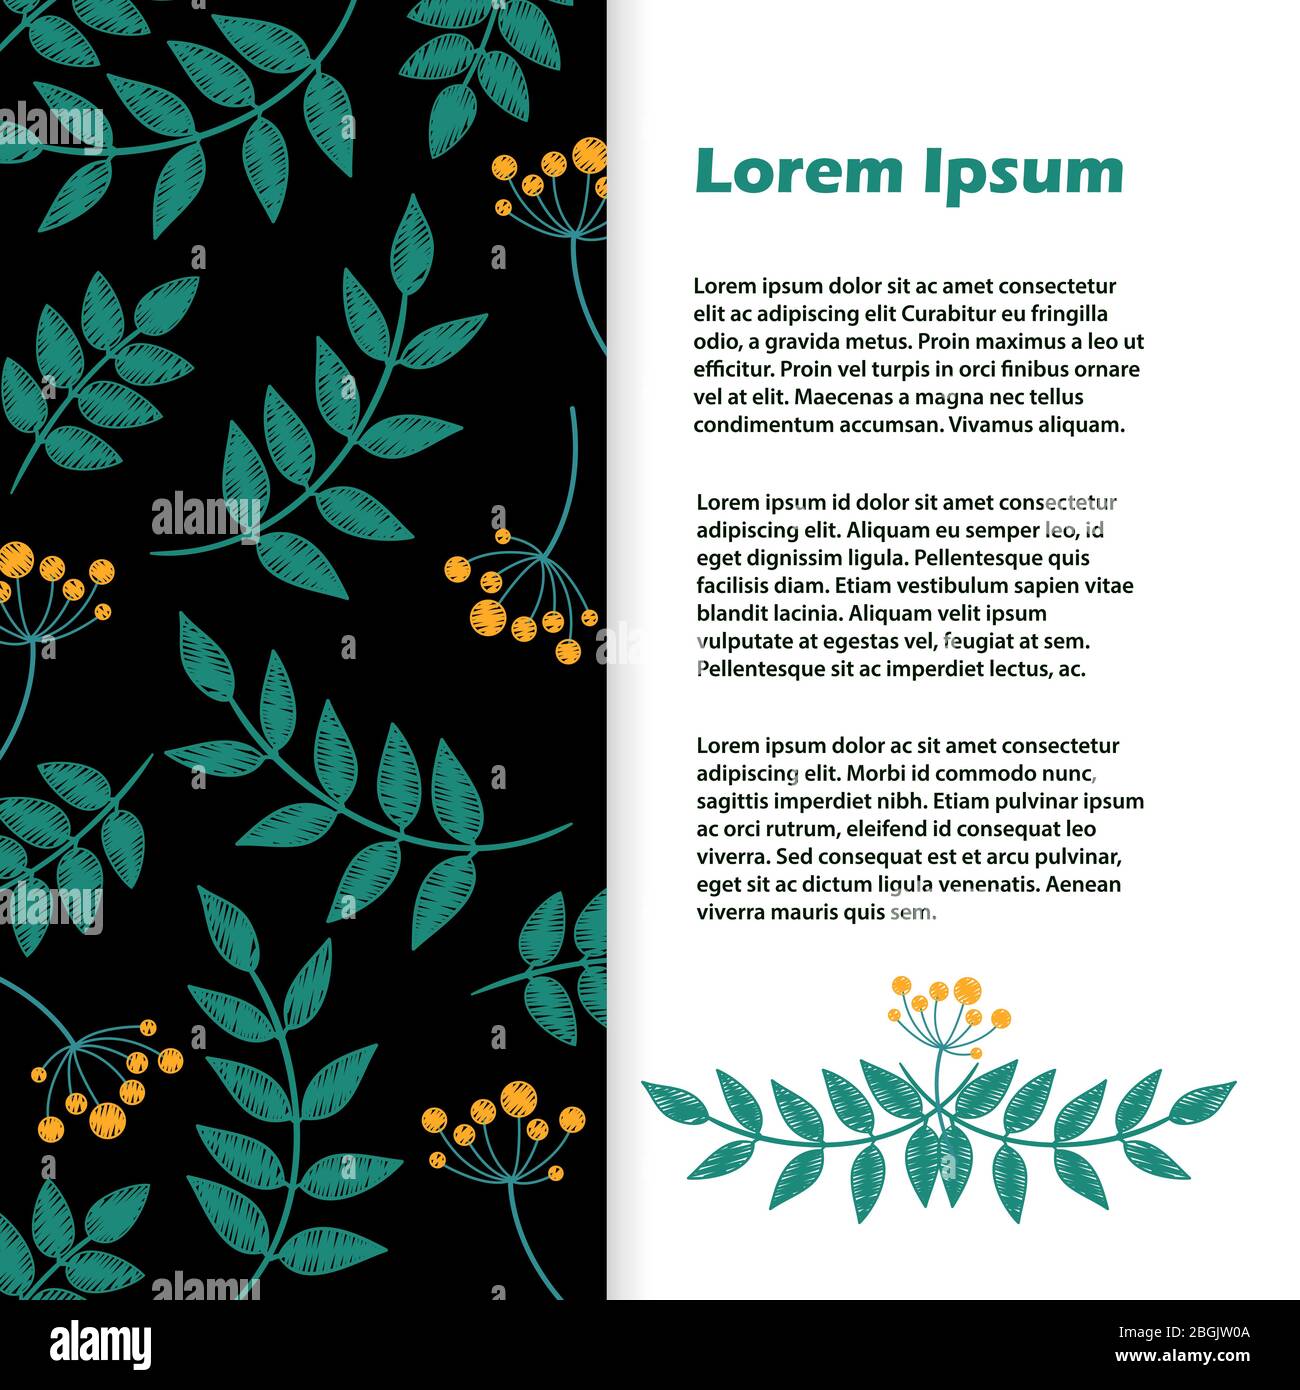 Vektor-Design mit Blumenbanner. Flyer mit Blättern und Blumen Stickerei Illustration Stock Vektor